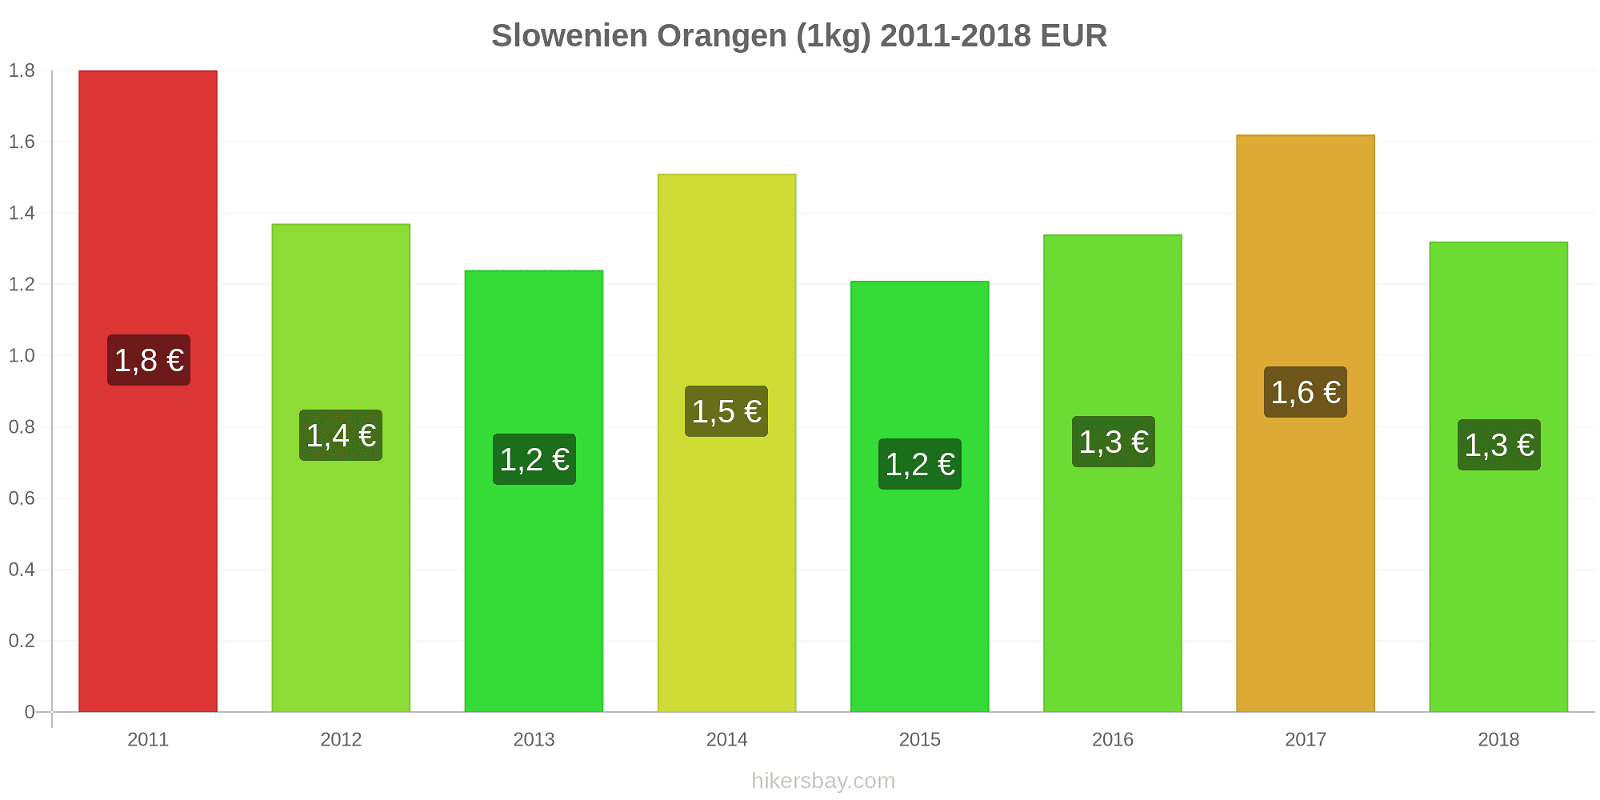 Slowenien Preisänderungen Orangen (1kg) hikersbay.com